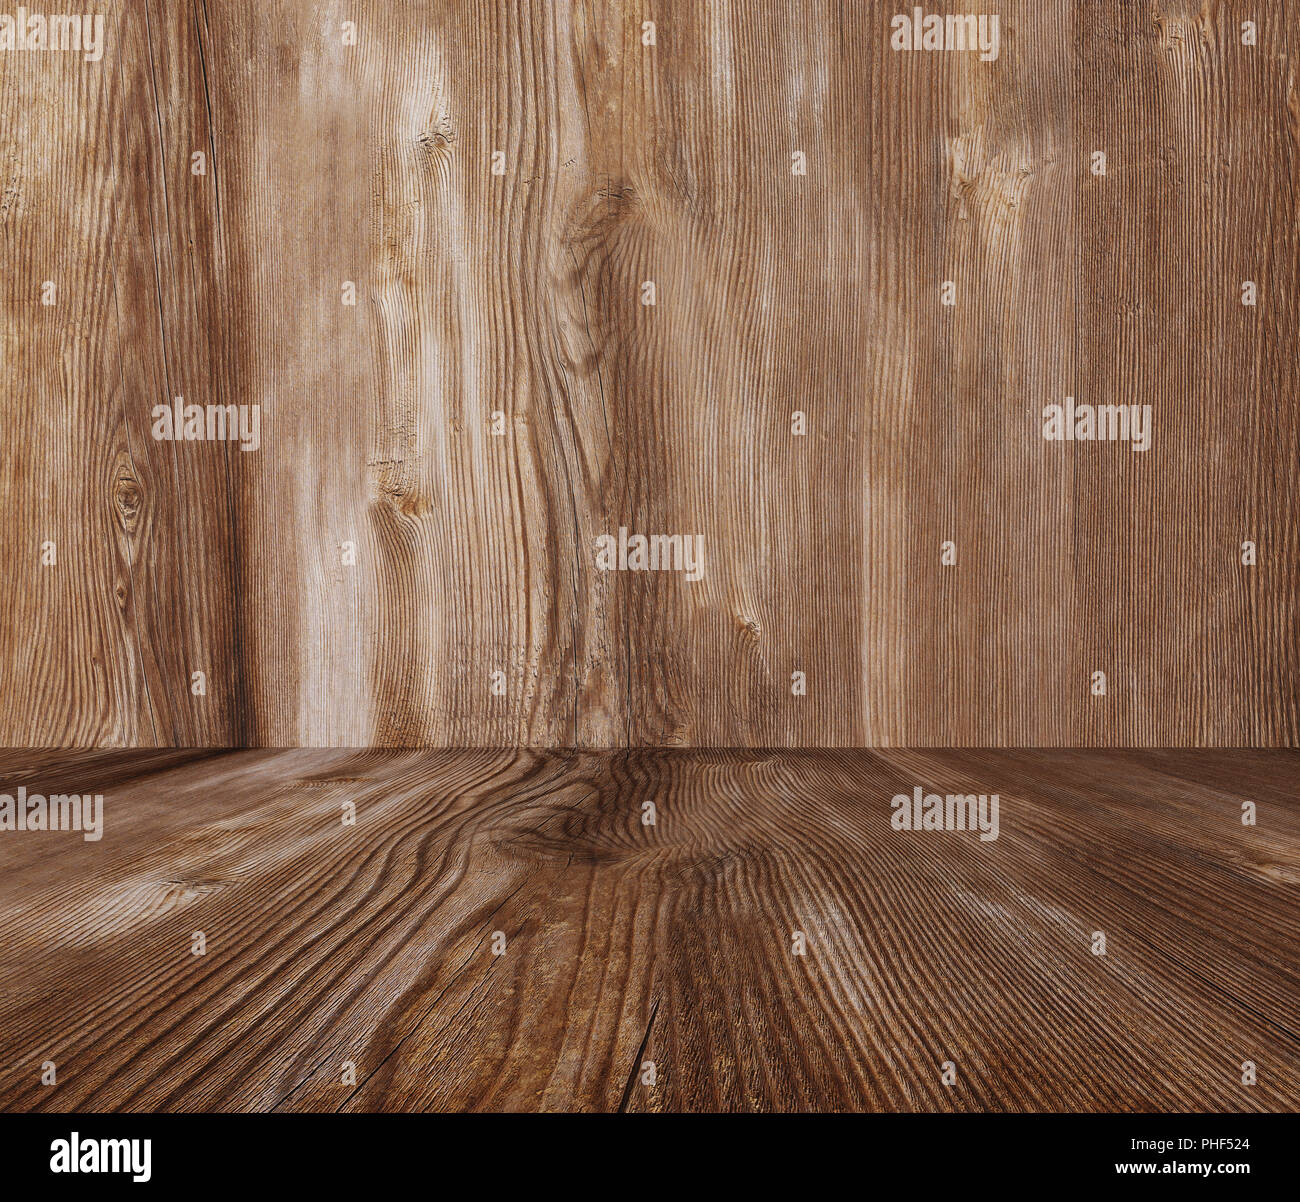 Holz Textur Hintergrund, Holz für Wand und Boden für Montage Produkte Stockfoto